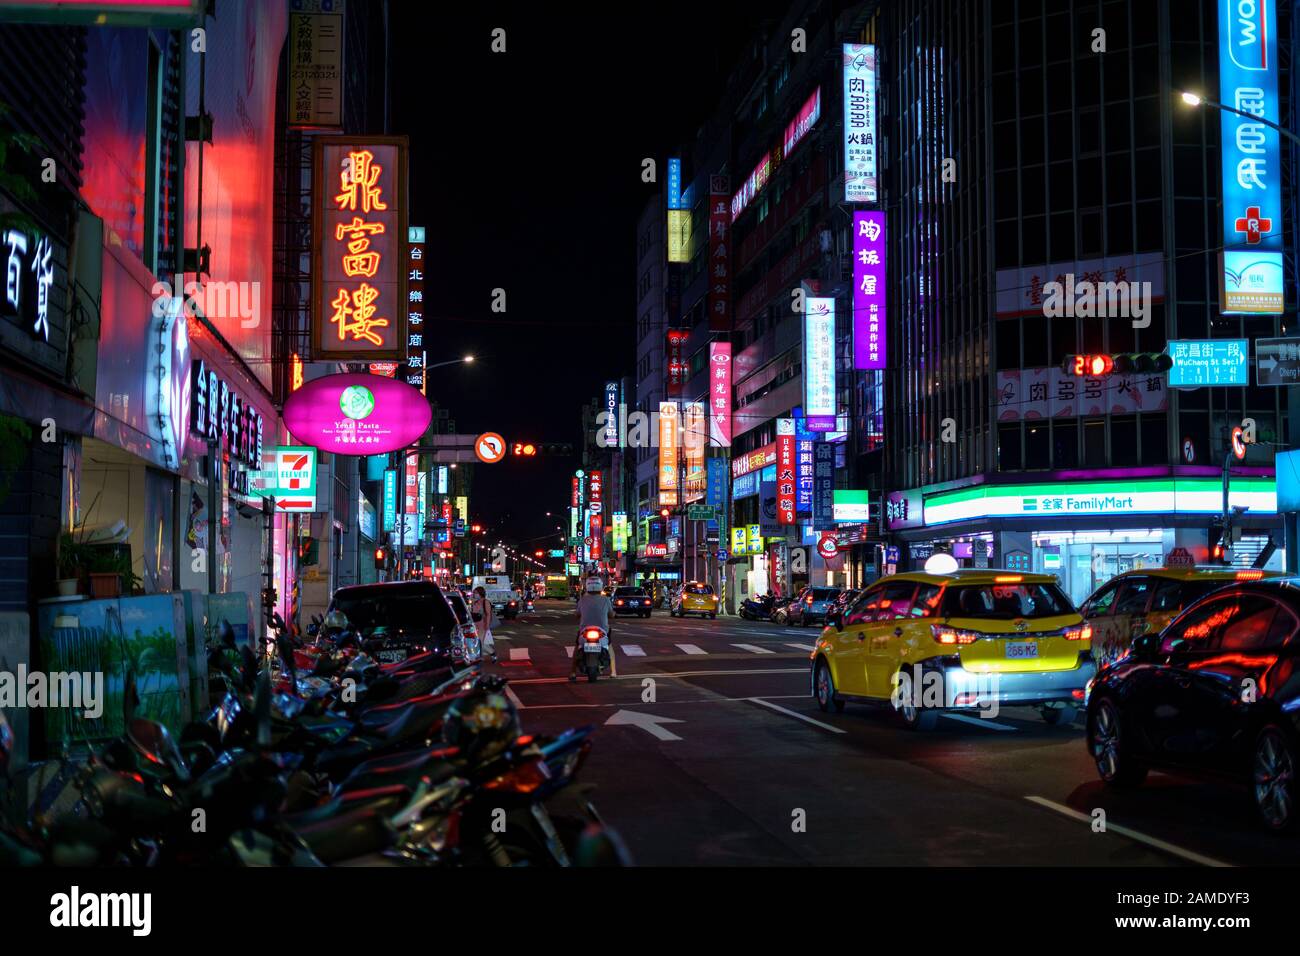 Belebte städtische Straße in der Nacht, beleuchtet von bunten Werbe-Neon-Zeichen mit chinesischen Schriftzeichen. Stockfoto